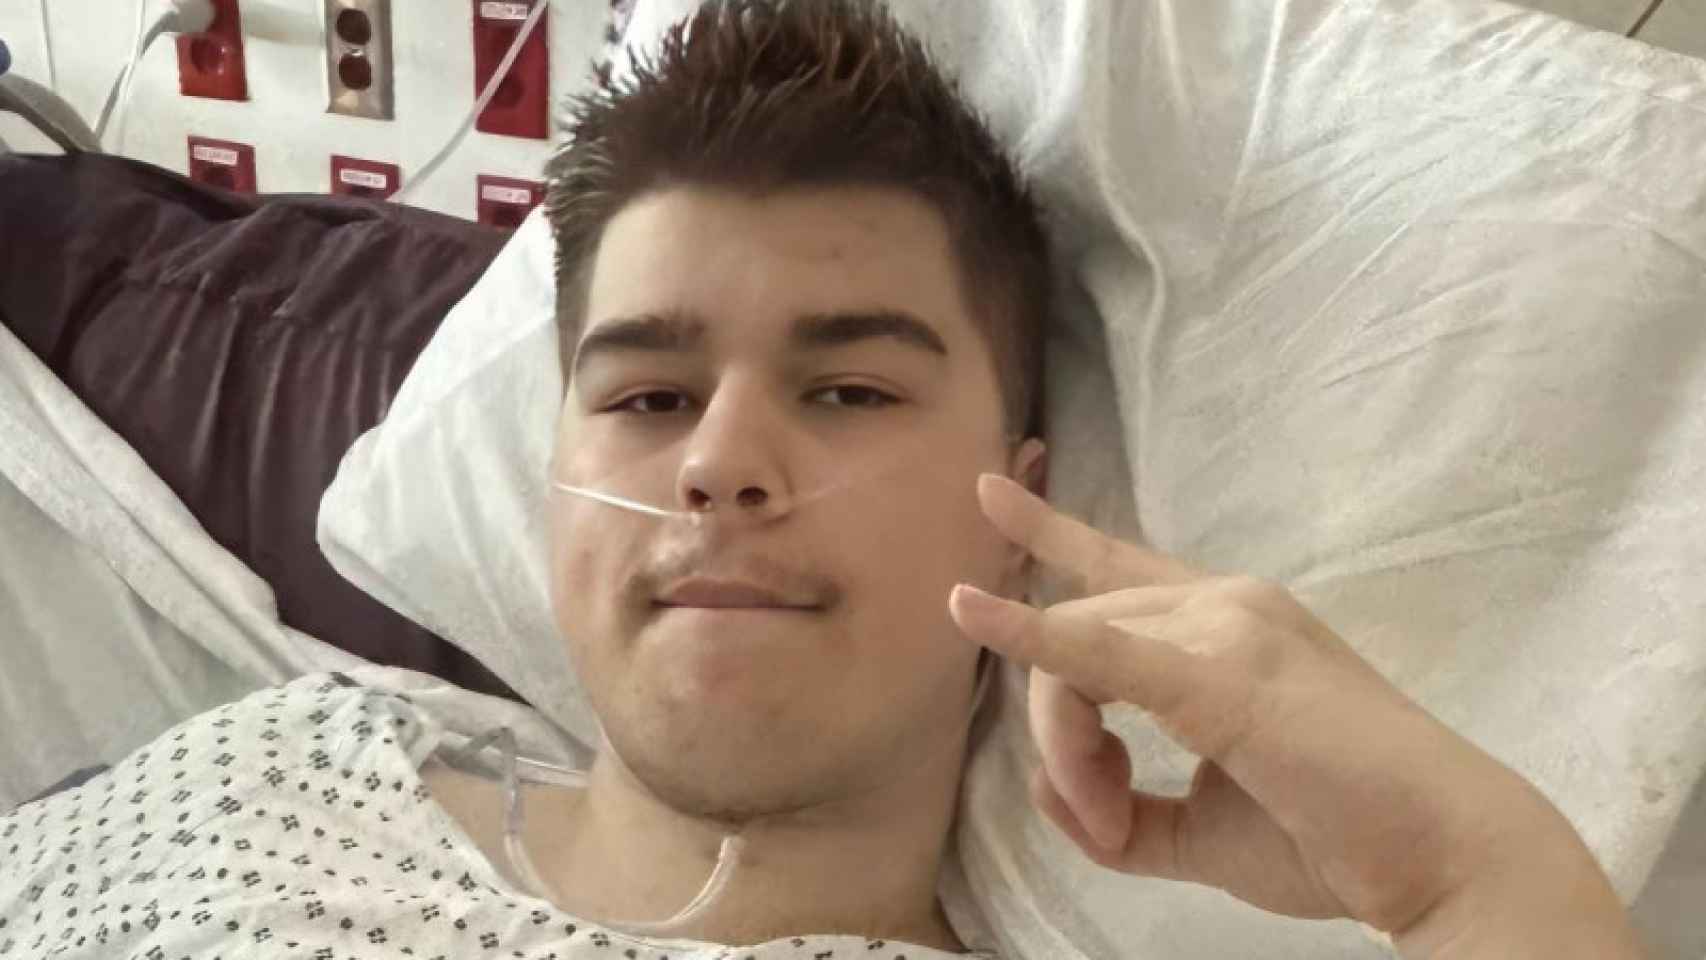 El creador de contenido para YouTube Tanner Cook, ingresado en el hospital.